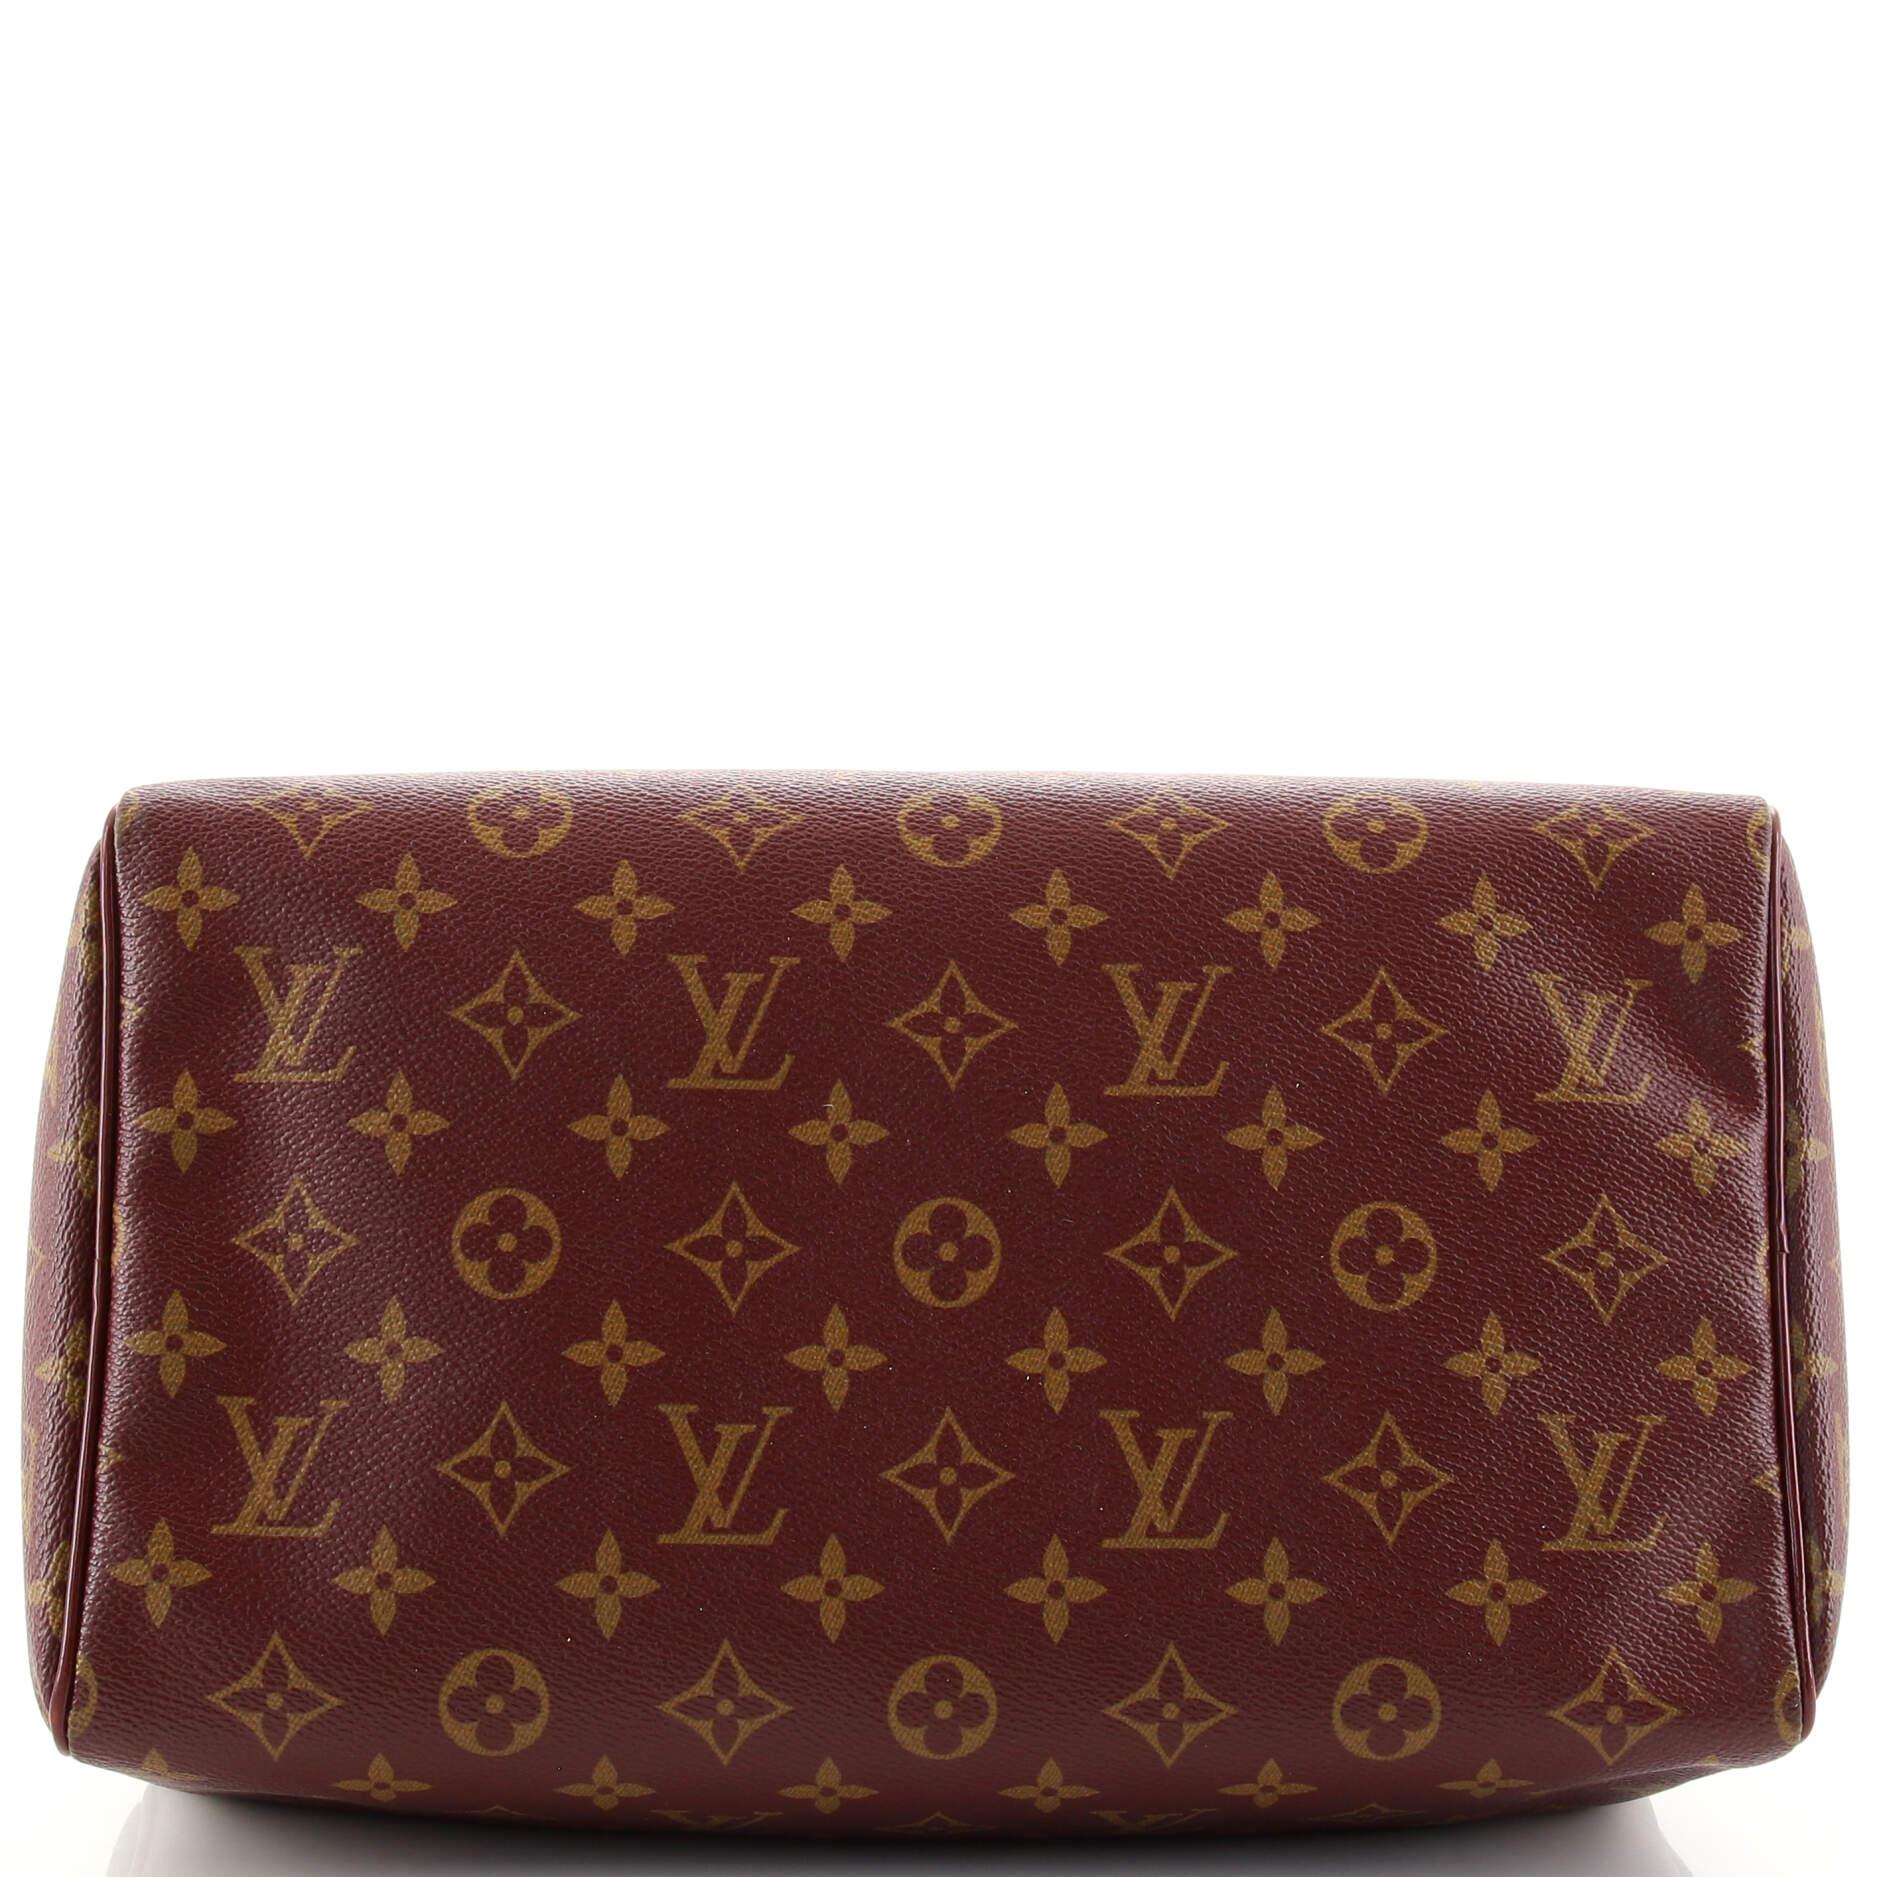 Brown Louis Vuitton Speedy Handbag Limited Edition Monogram Mirage 30